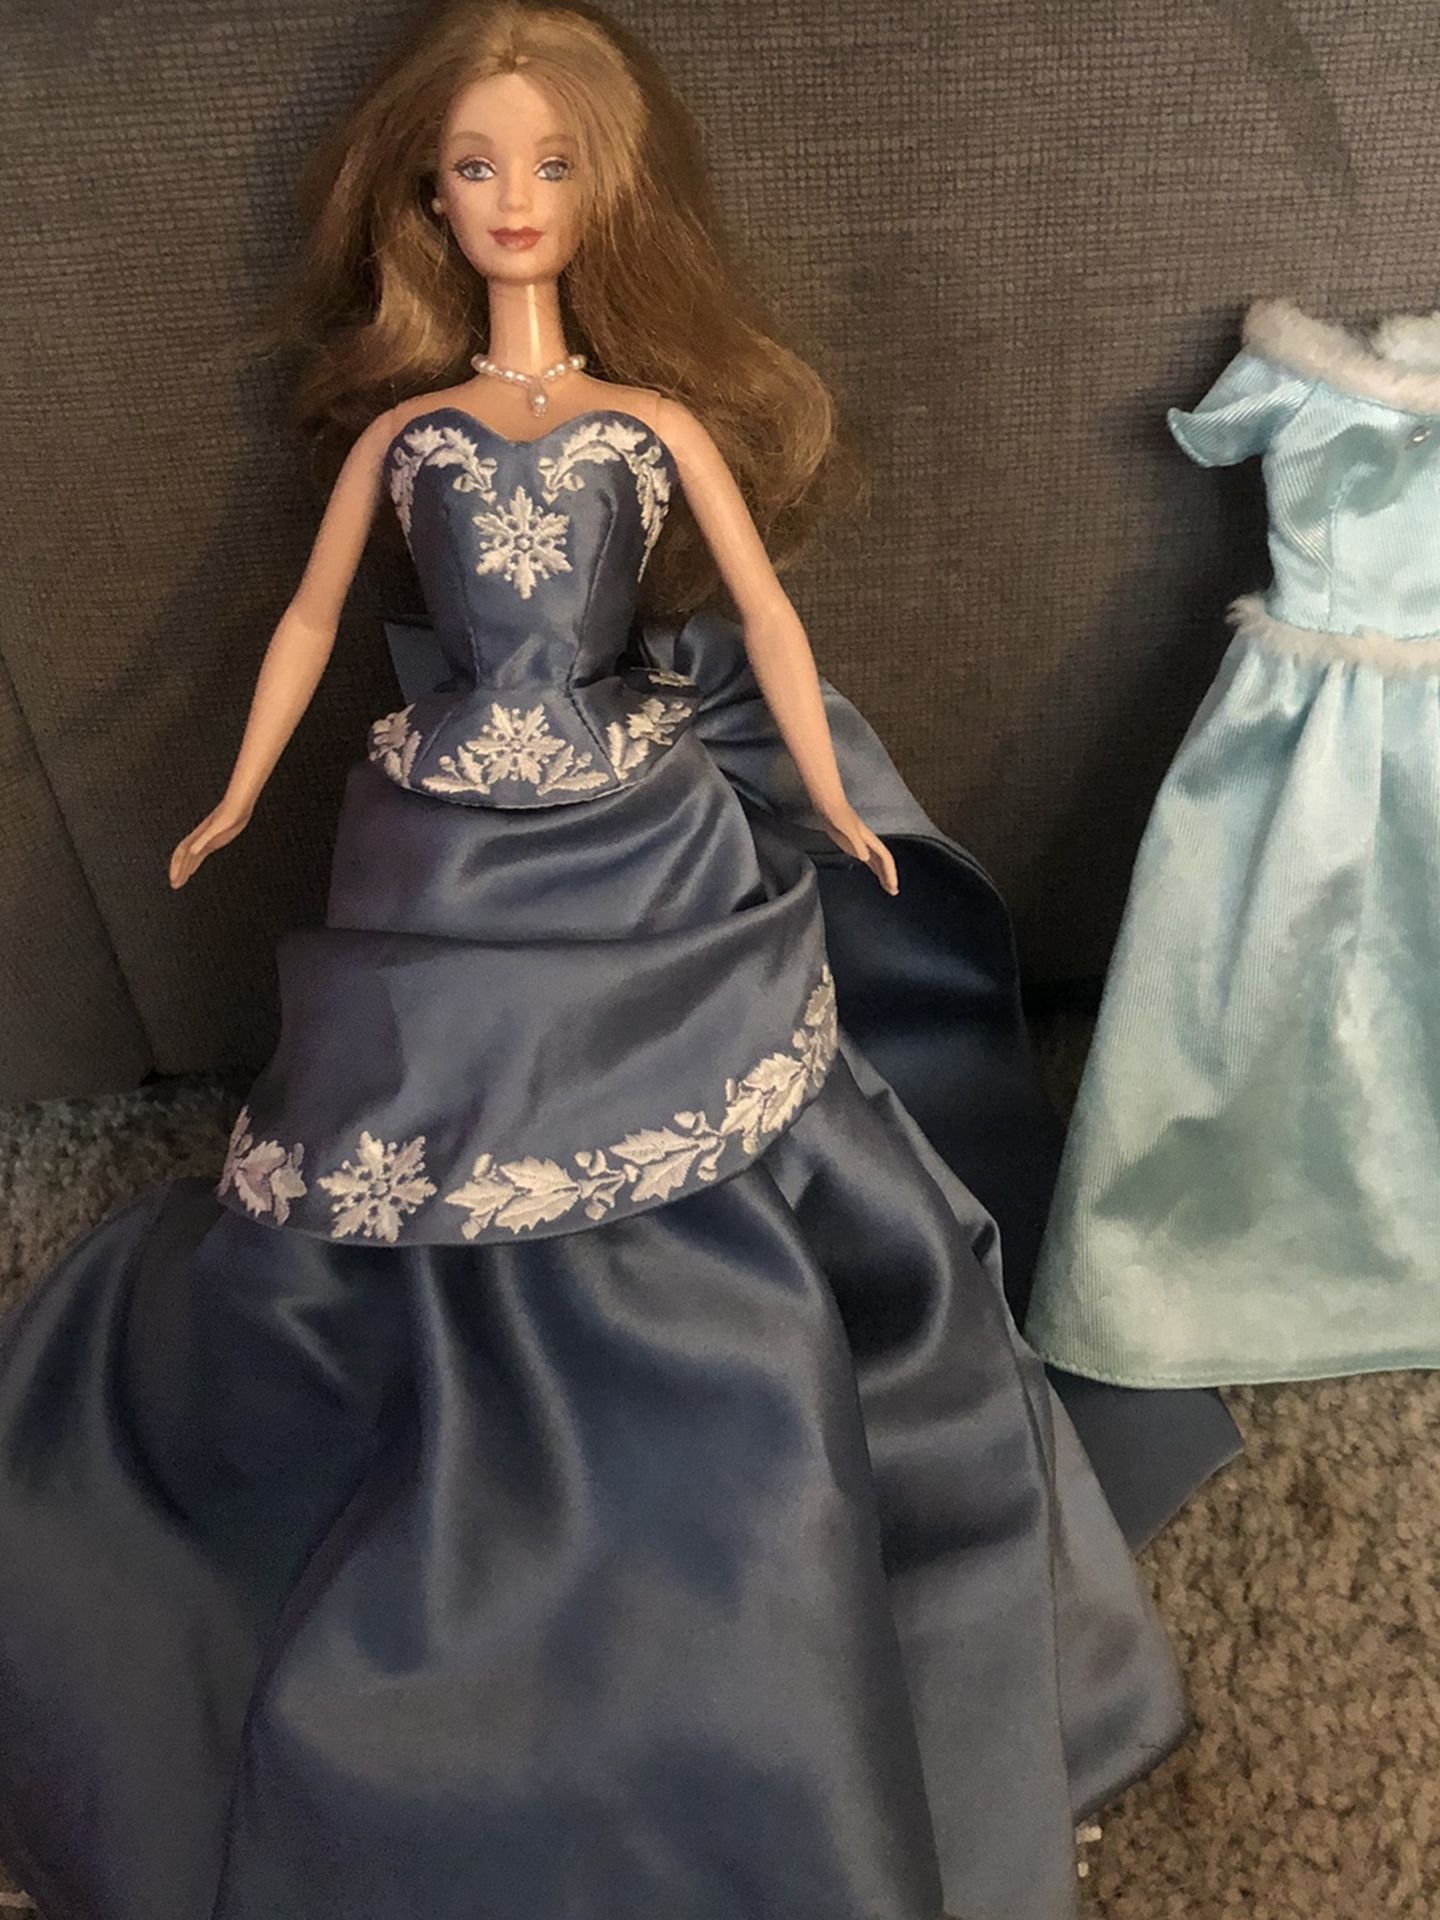 Collectible Winter Wonderland Barbie Doll